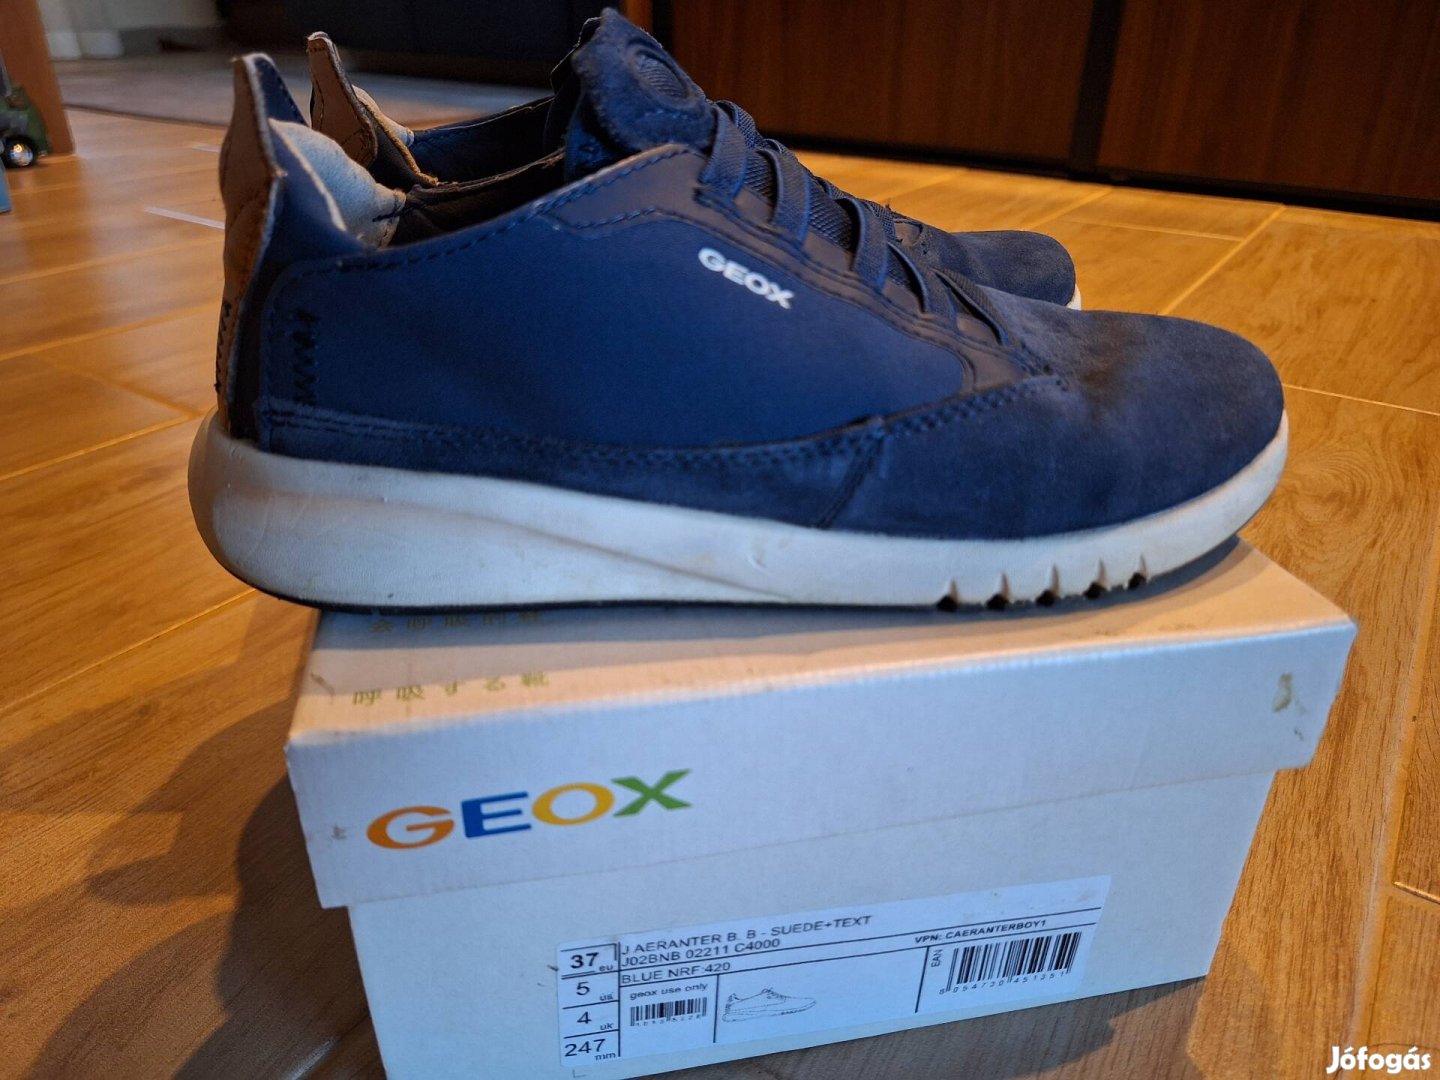 Geox 37-es szinte új cipő